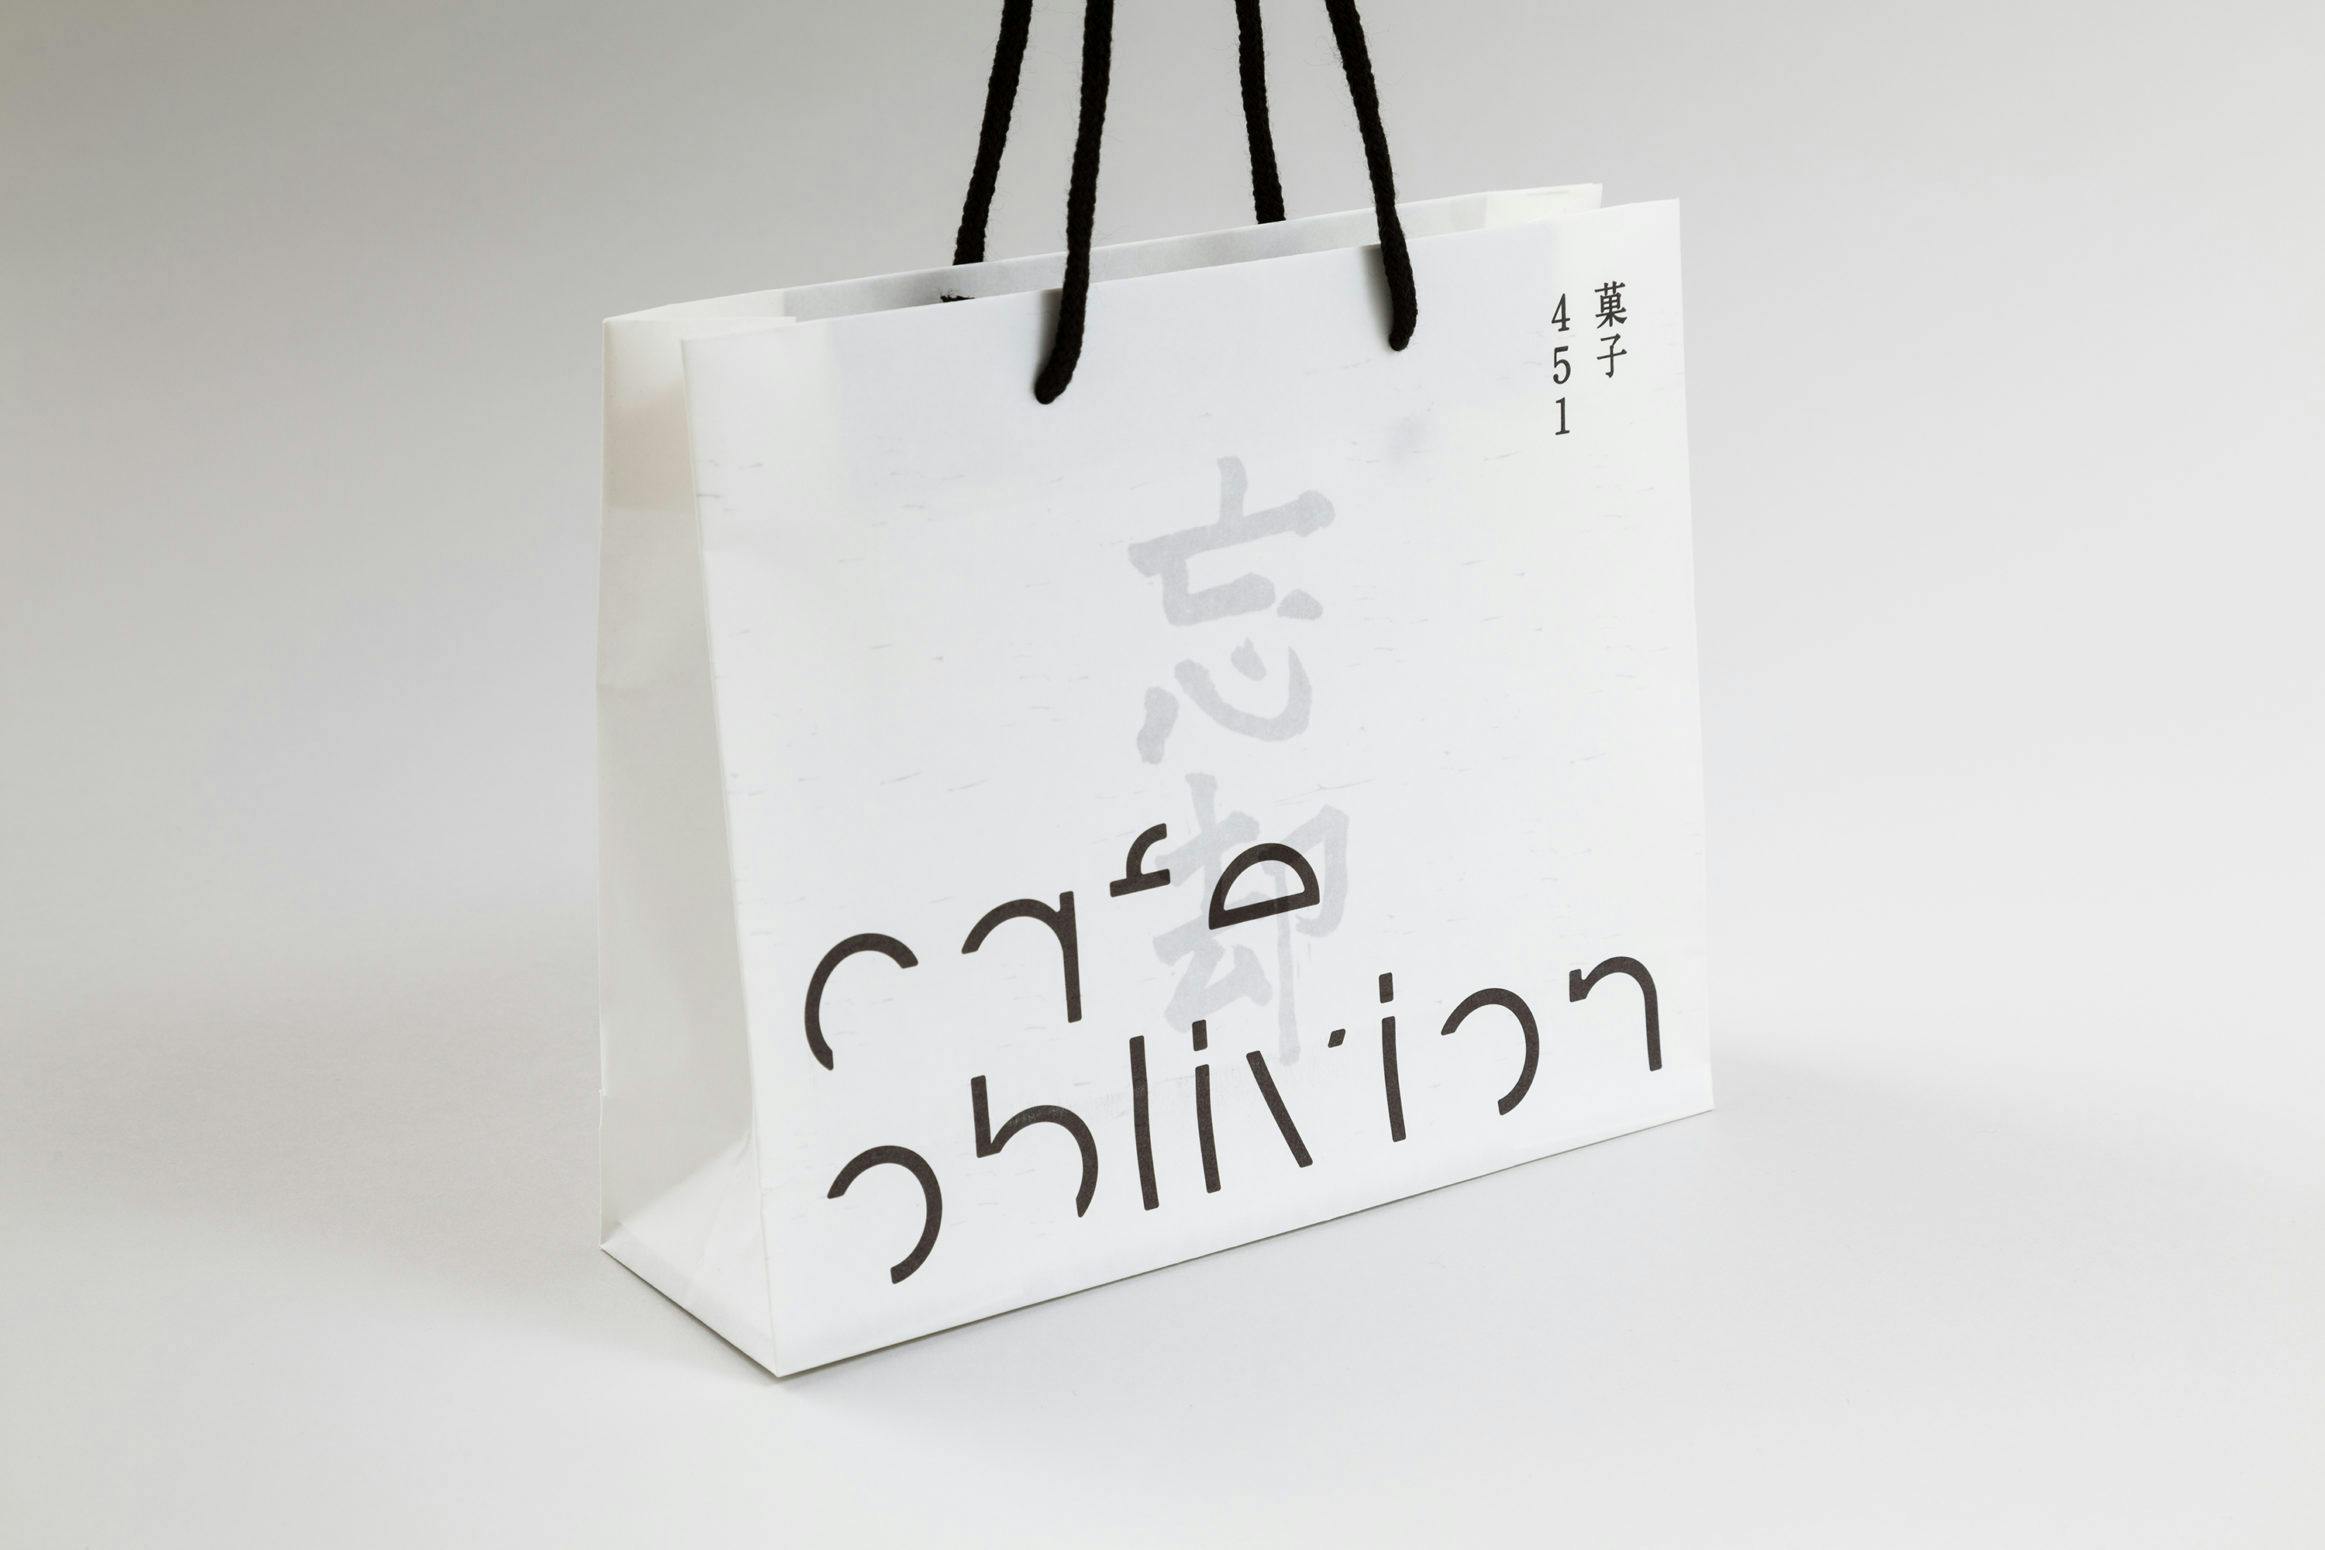 cafe oblivion